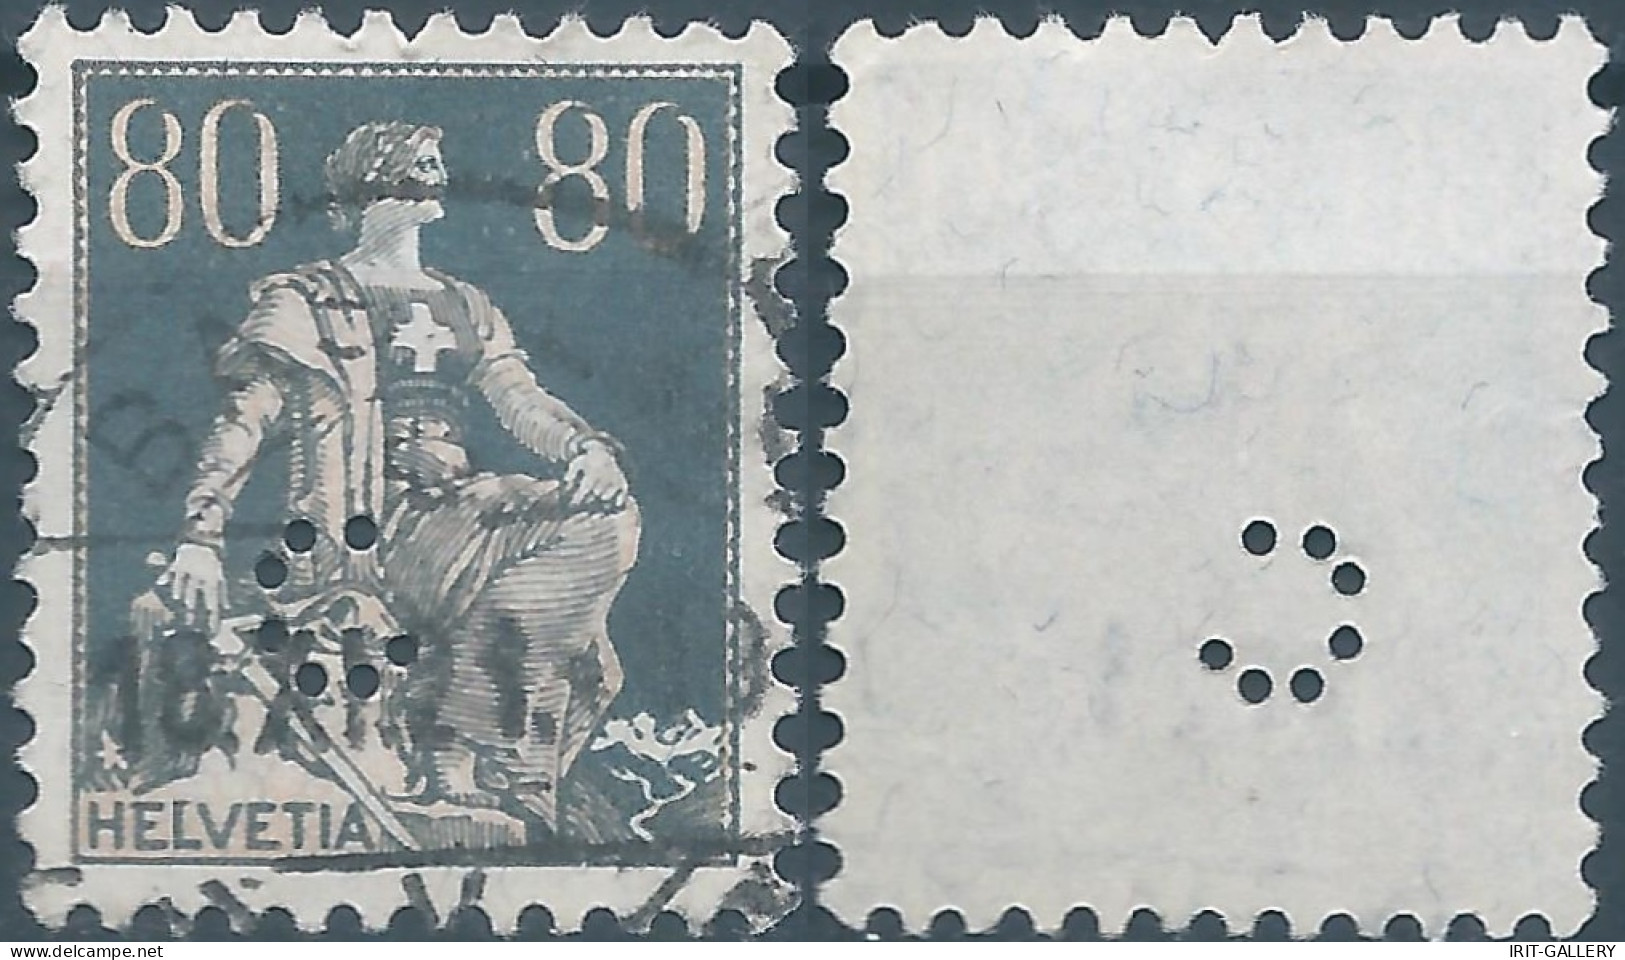 Svizzera-Switzerland-Schweiz-Suisse,HELVETIA,1915 -1918 , Helvetia With The Sword 80(C)grey (PERFIN) - Perfin